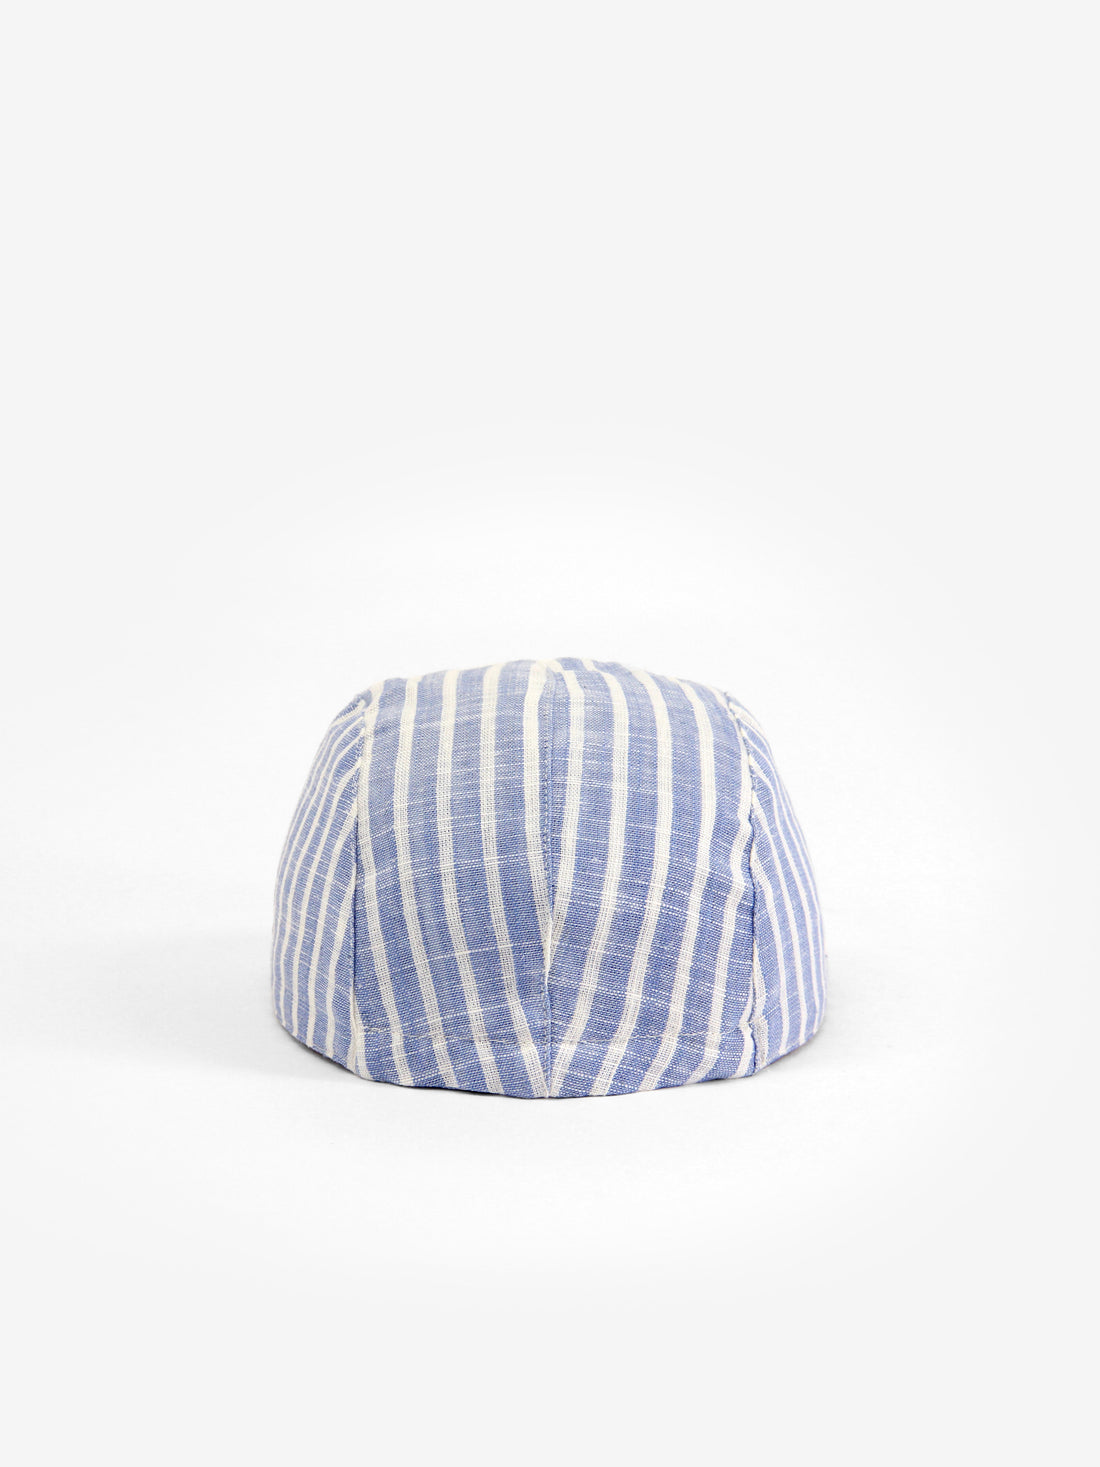 Linen cap by Caribou, stripes